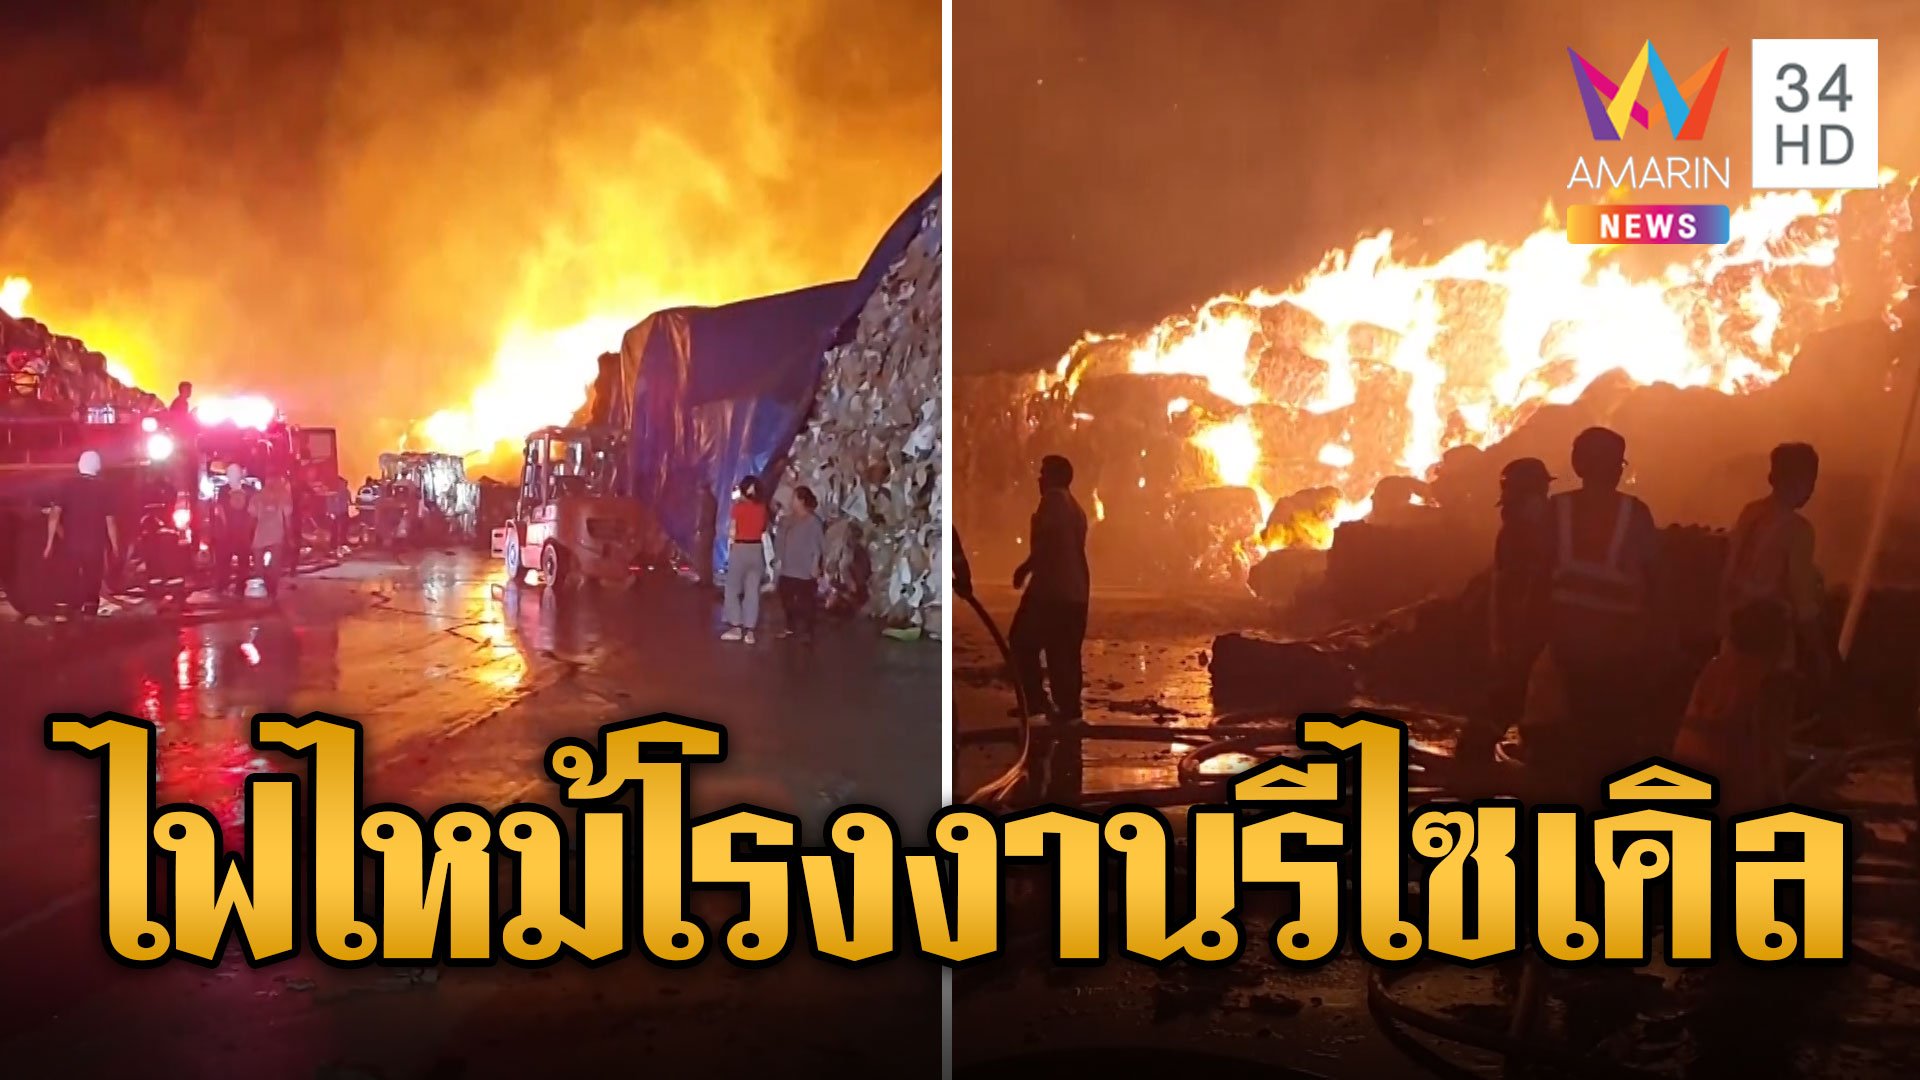 ไฟไหม้โรงงานรีไซเคิล เผาวอดเป็นทะเลเพลิง | ข่าวอรุณอมรินทร์ | 1 พ.ค. 67 | AMARIN TVHD34